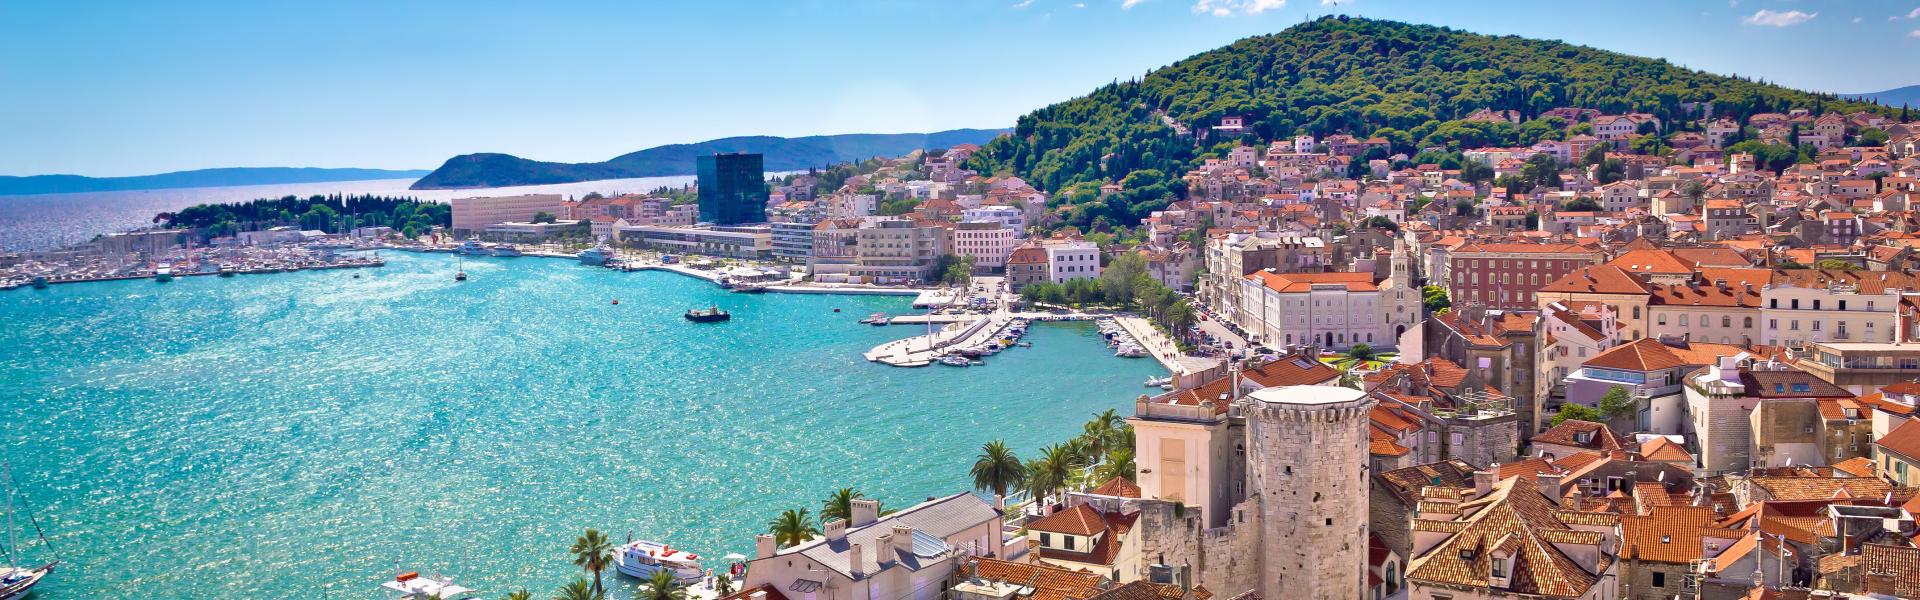 Ferienwohnungen und Ferienhäuser in Kroatien